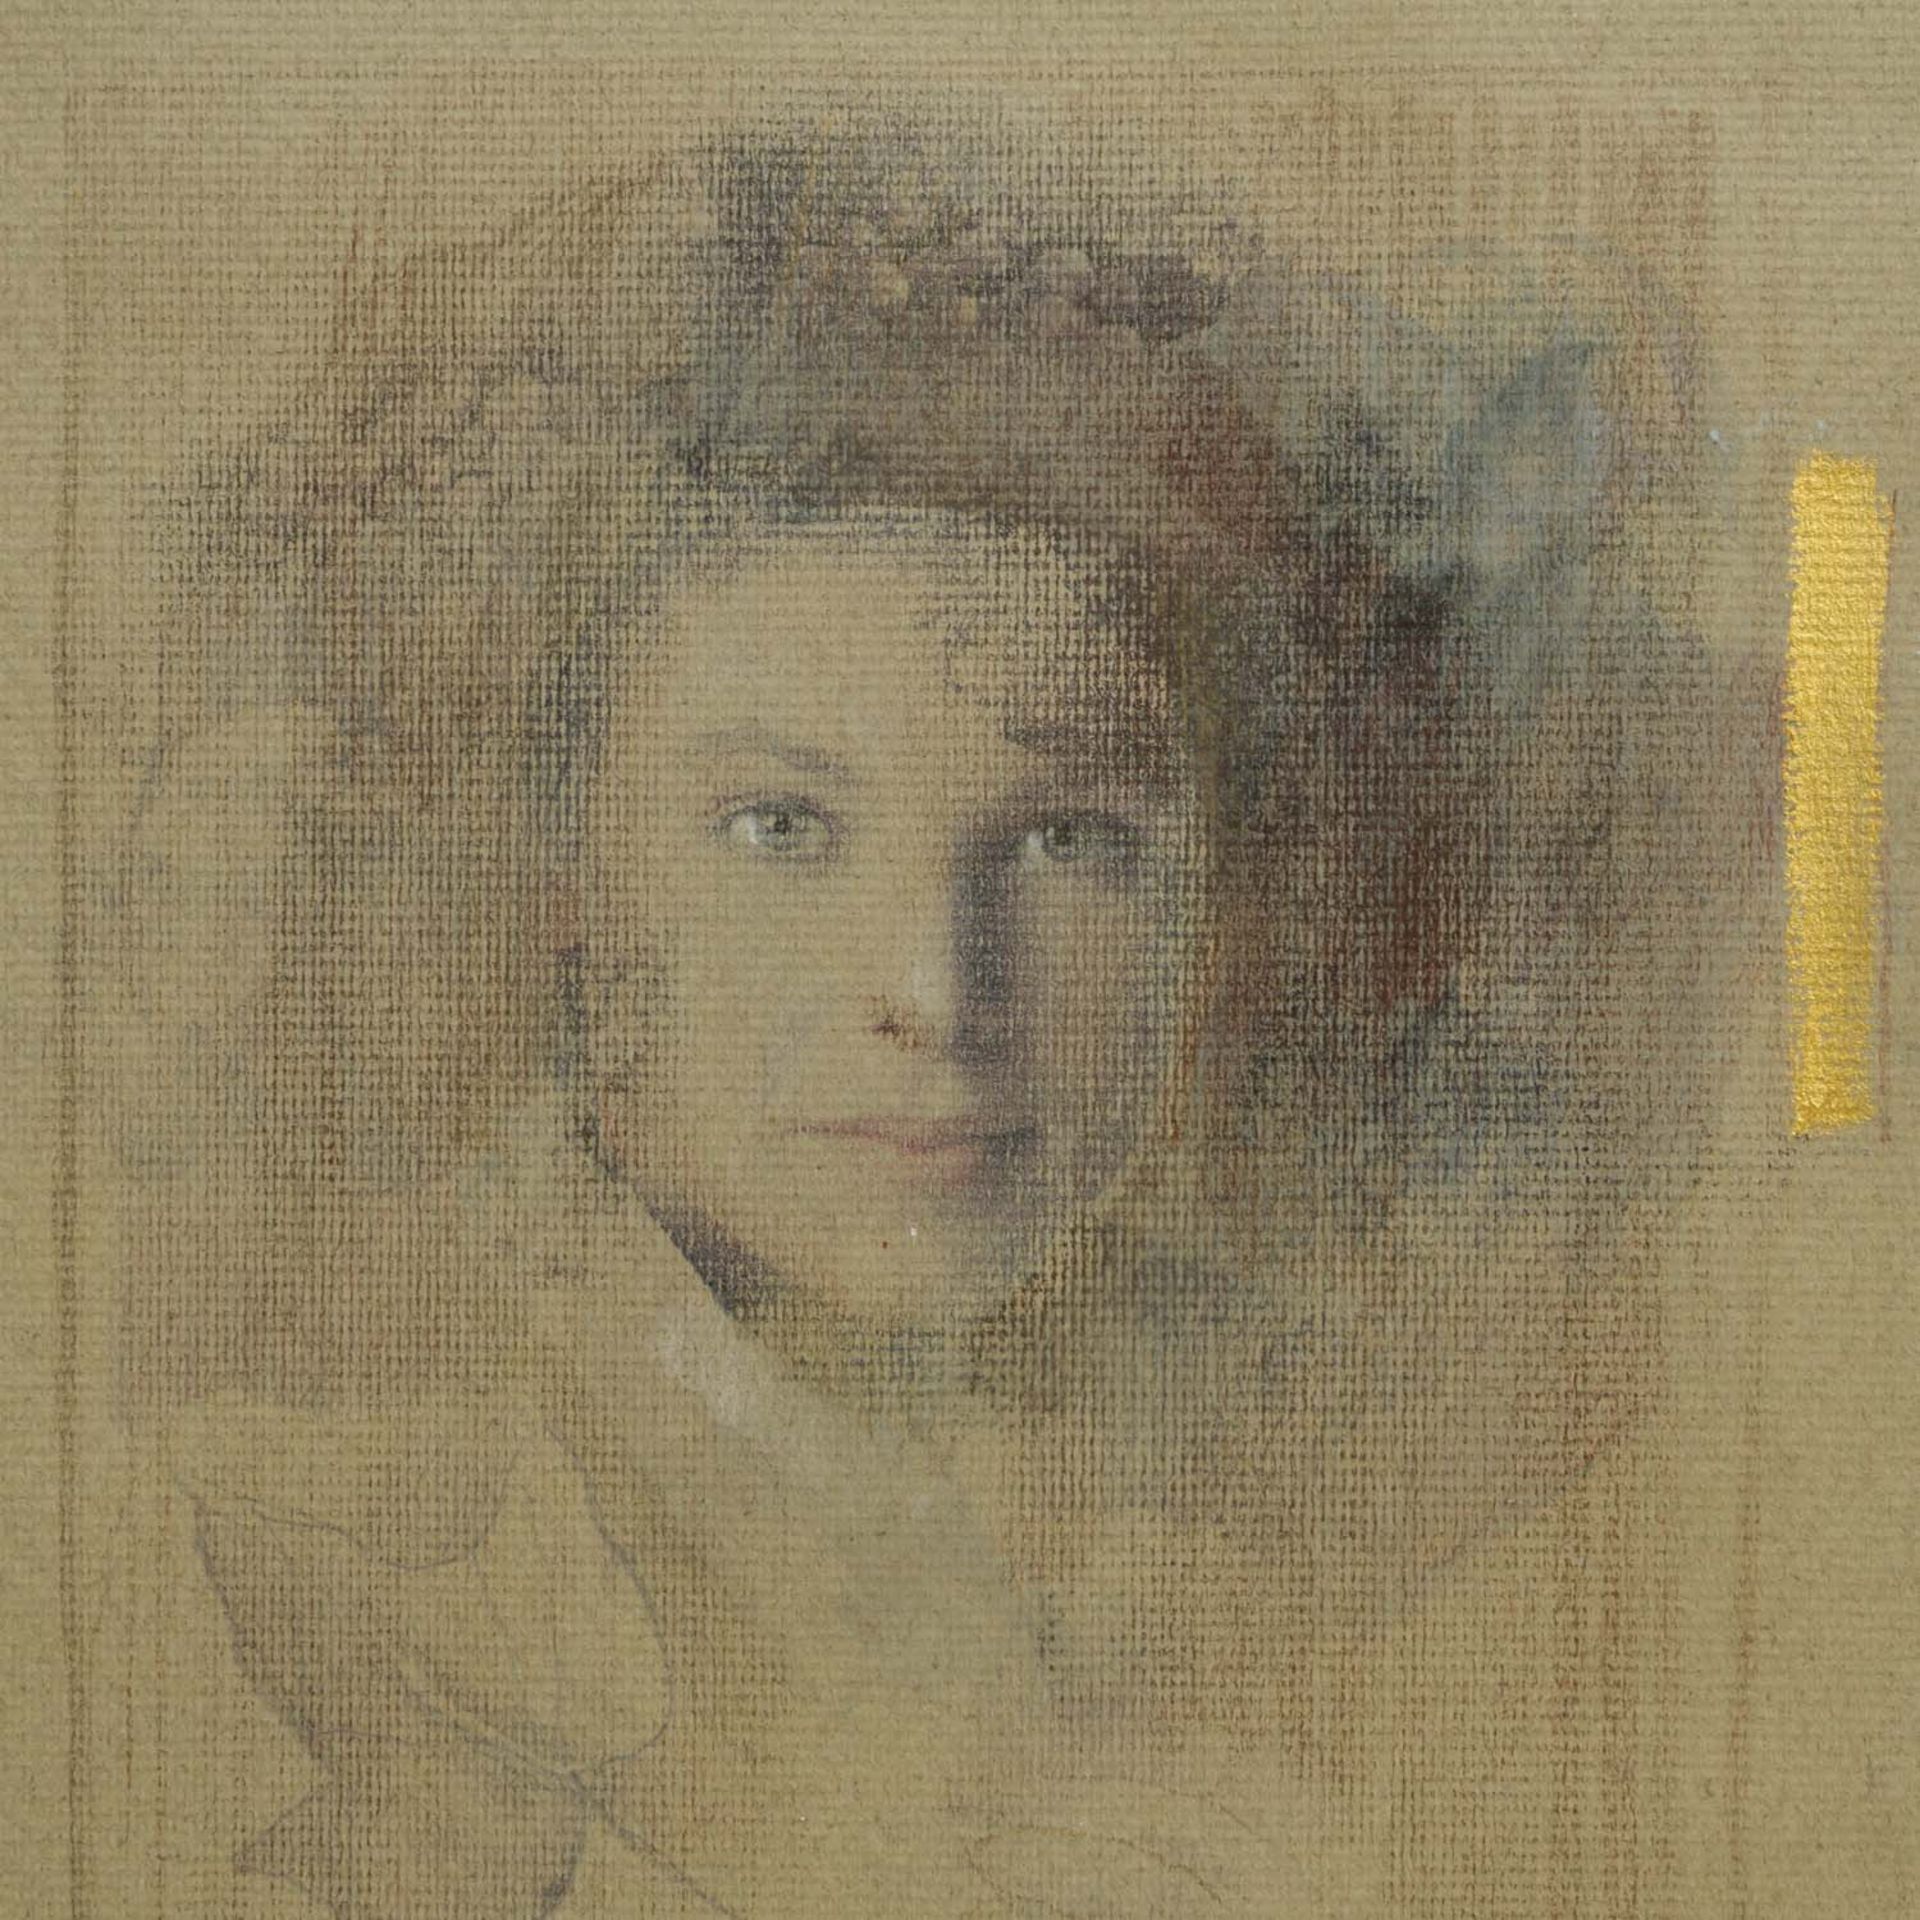 BERBER, MERSAD (1940-2012), "Portrait einer jungen Frau", - Bild 6 aus 9